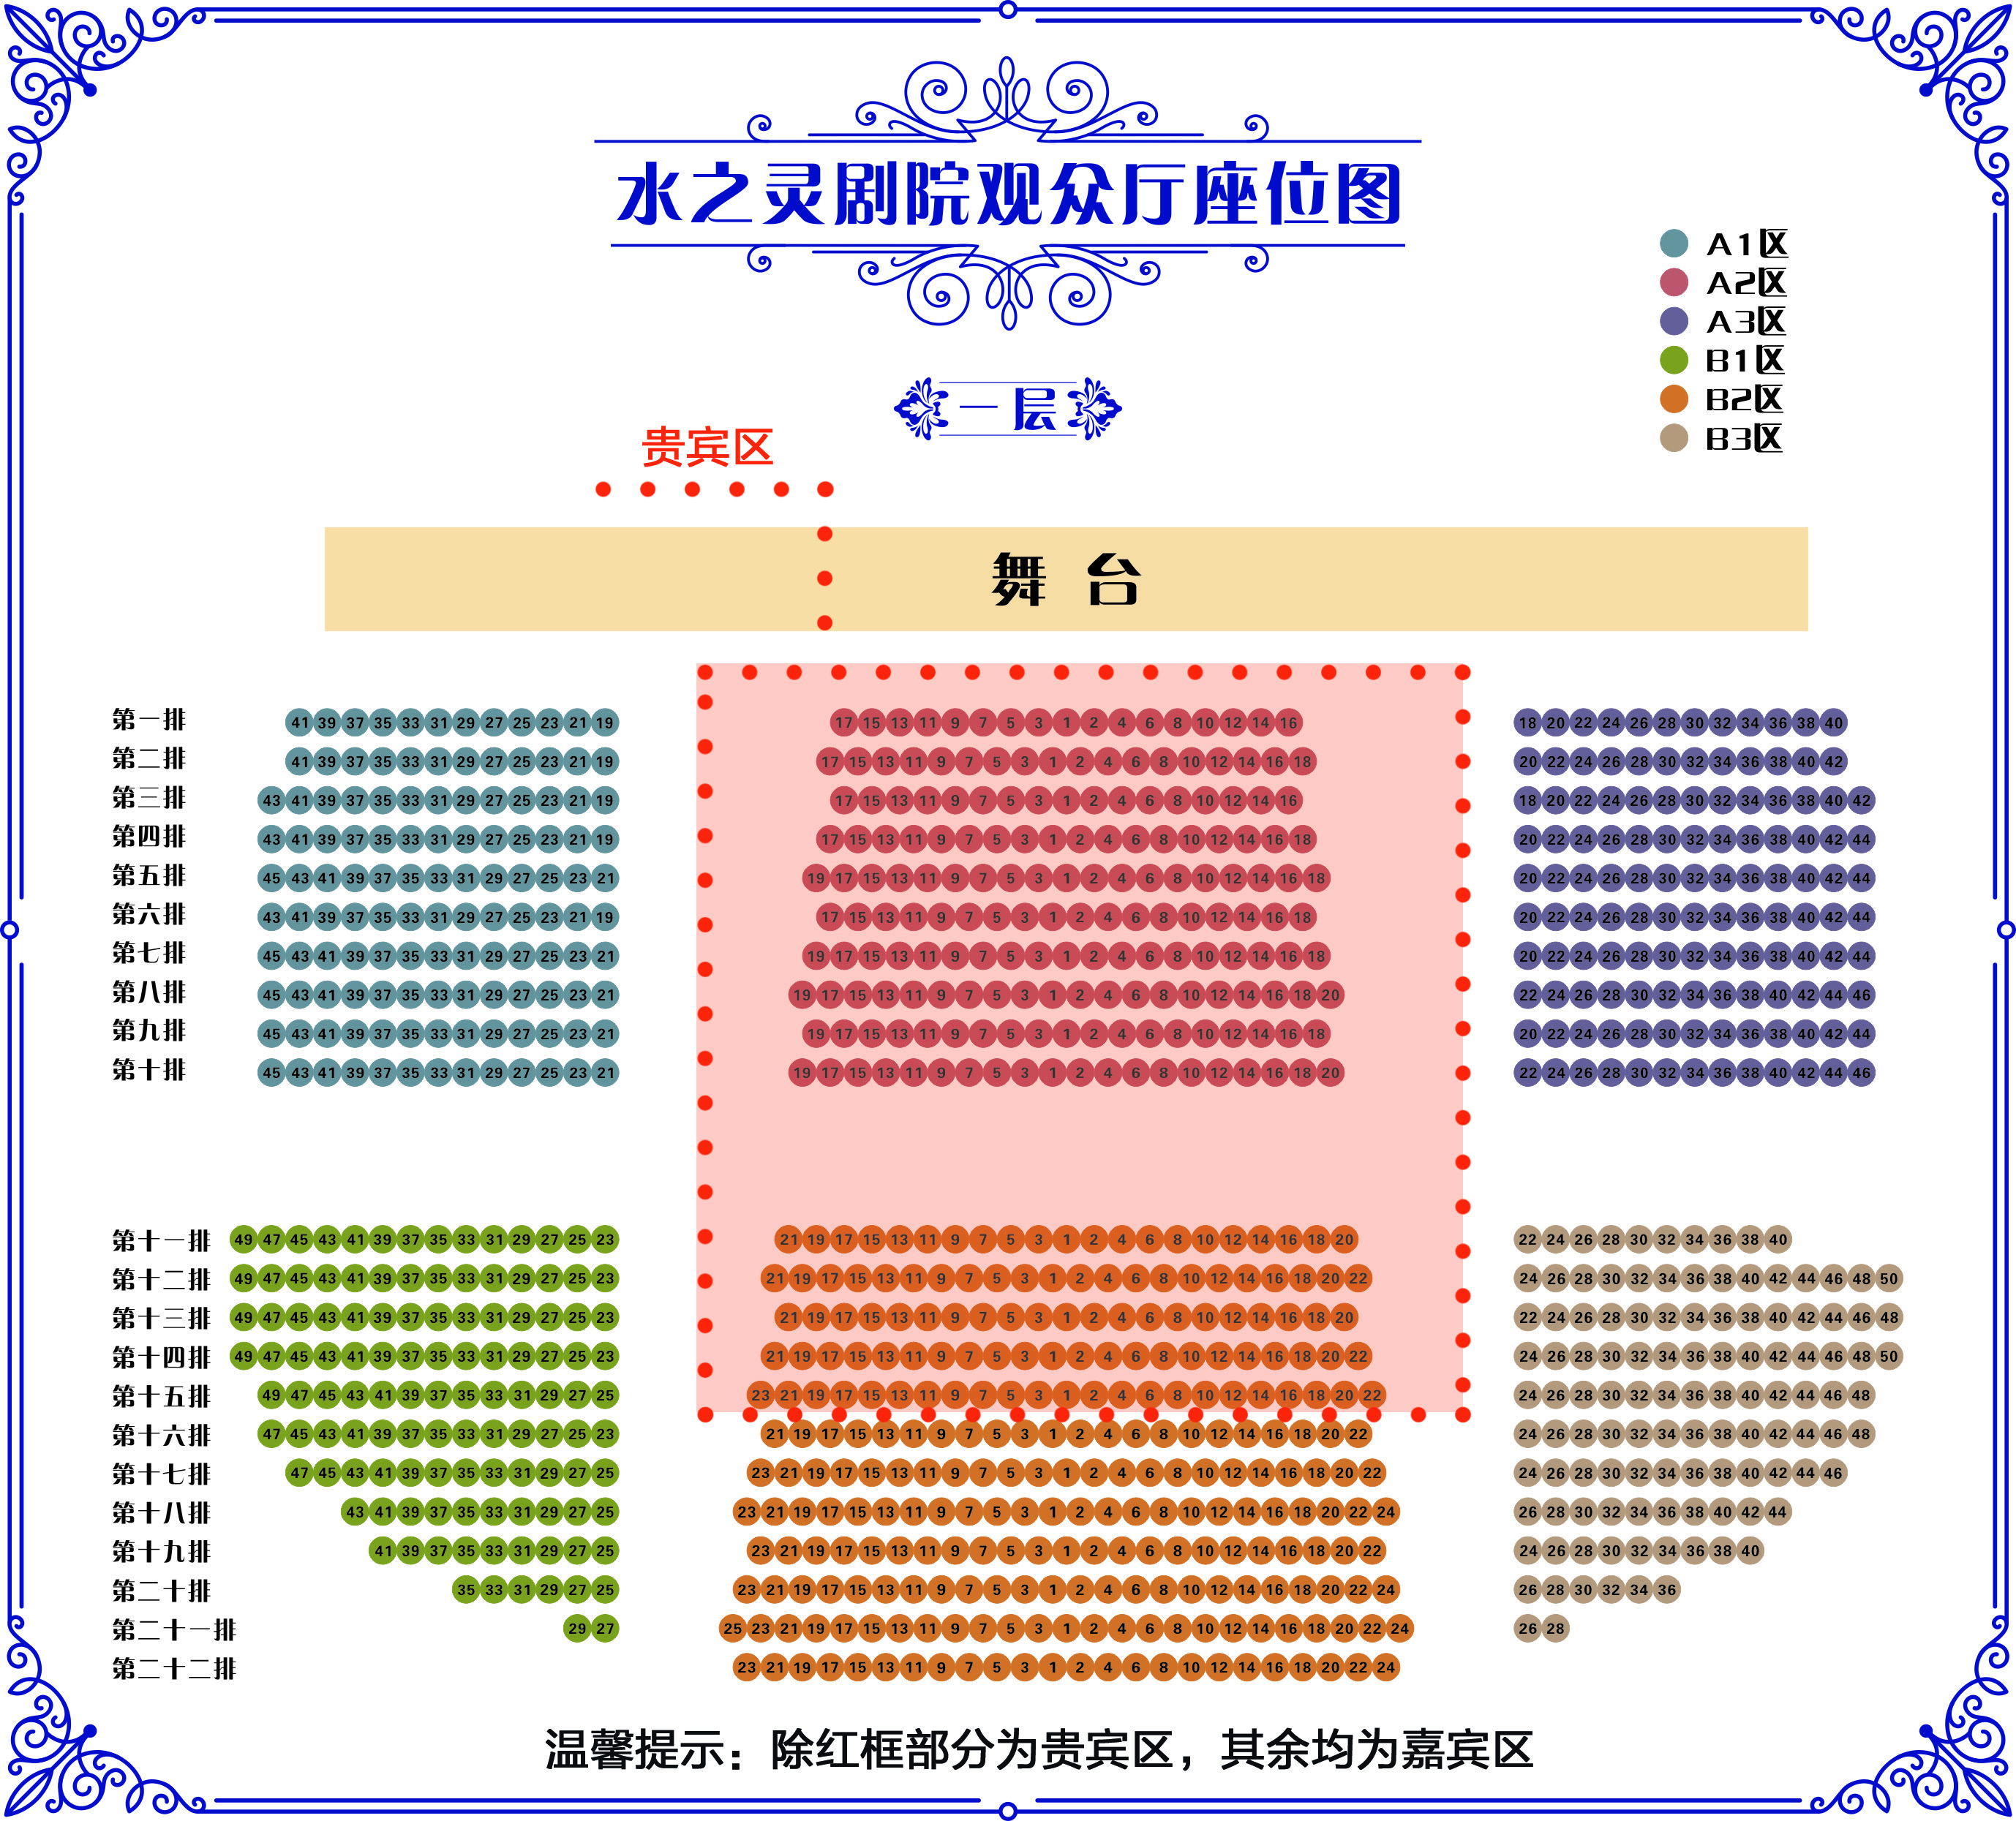 所以演出还是在原来的剧场,千岛湖炉烽路13号千岛湖影剧院;所以座位不